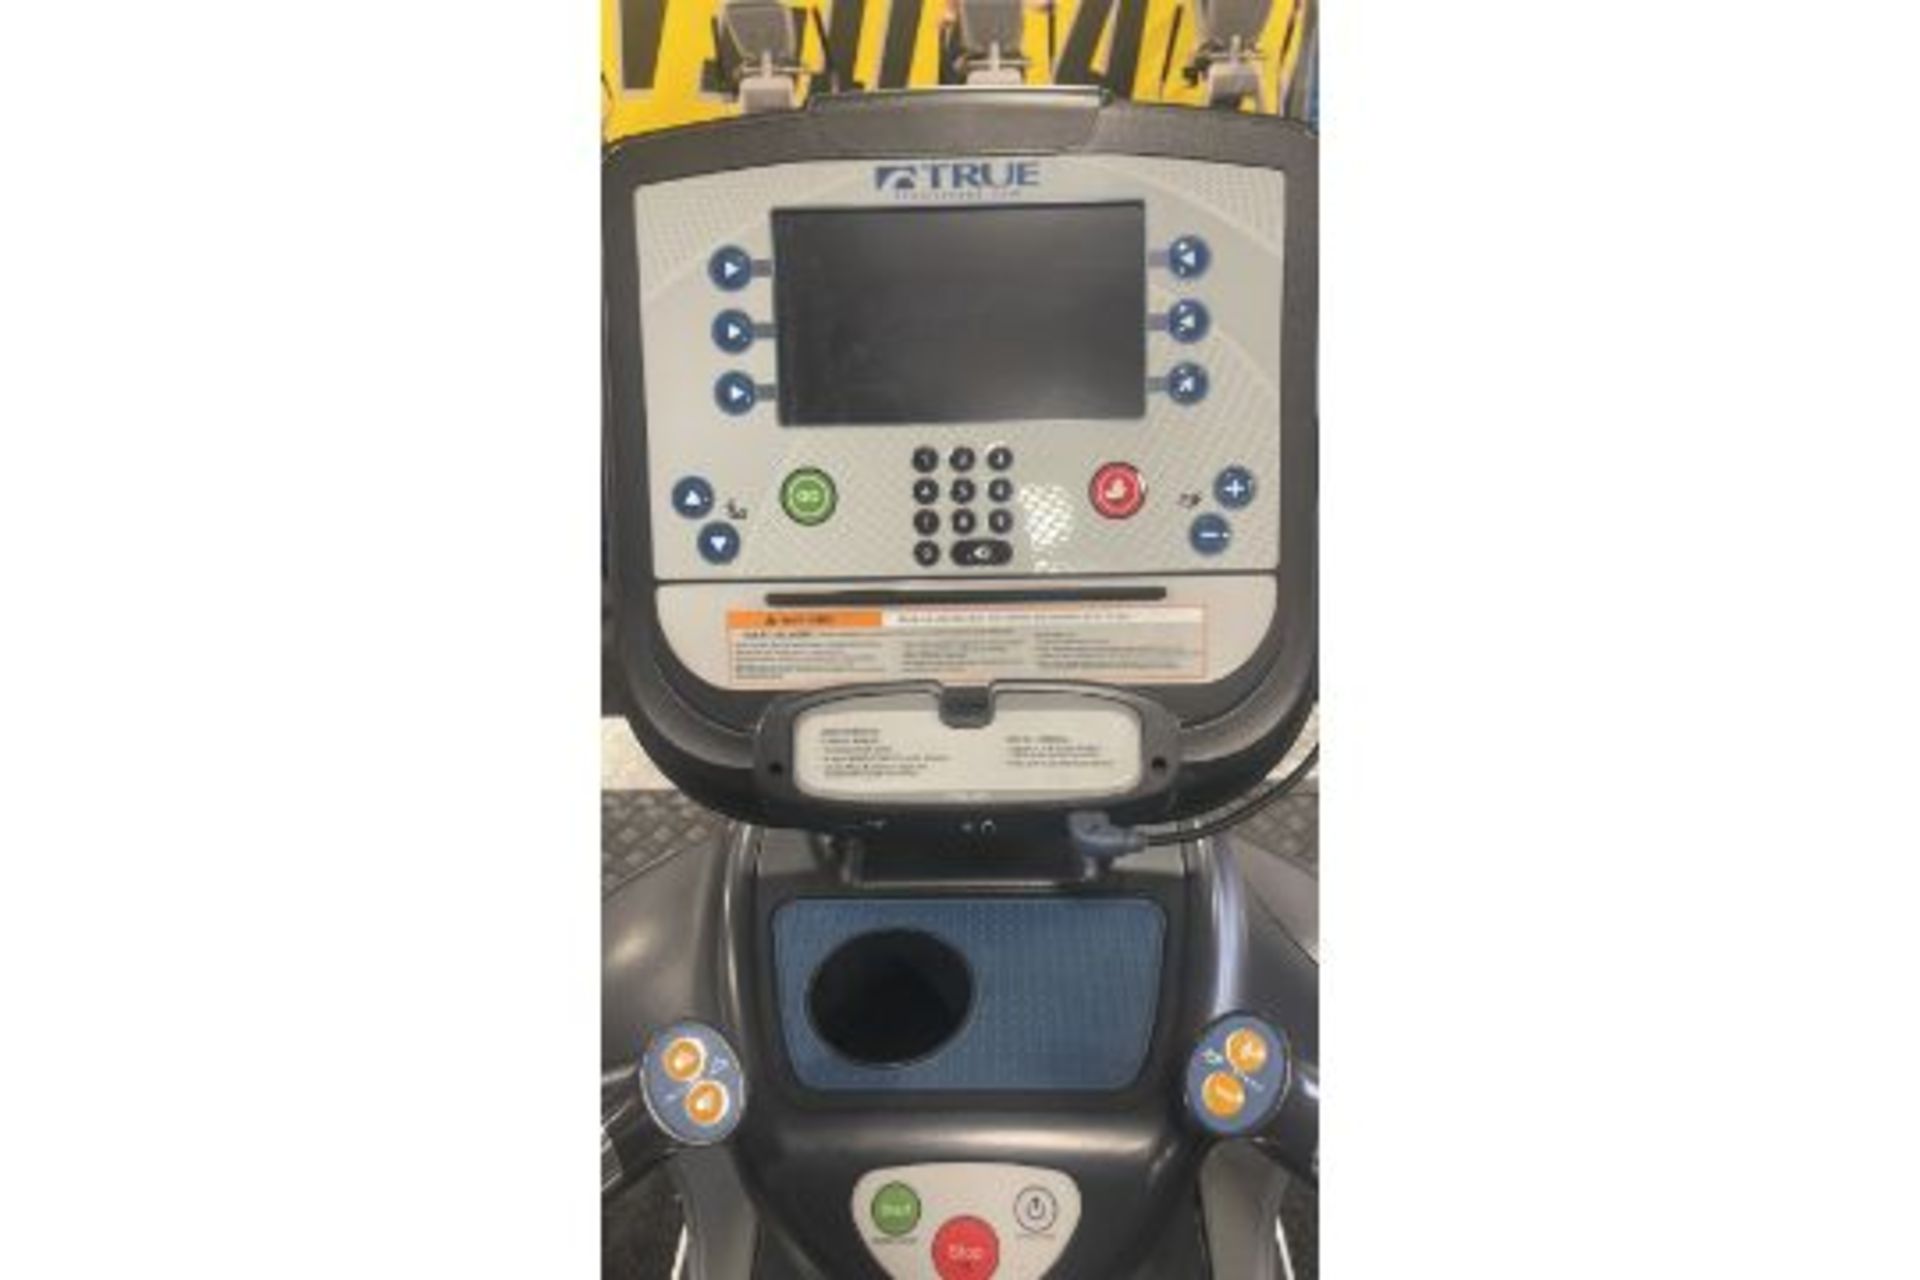 True Fitness 600 Treadmill - Image 4 of 5